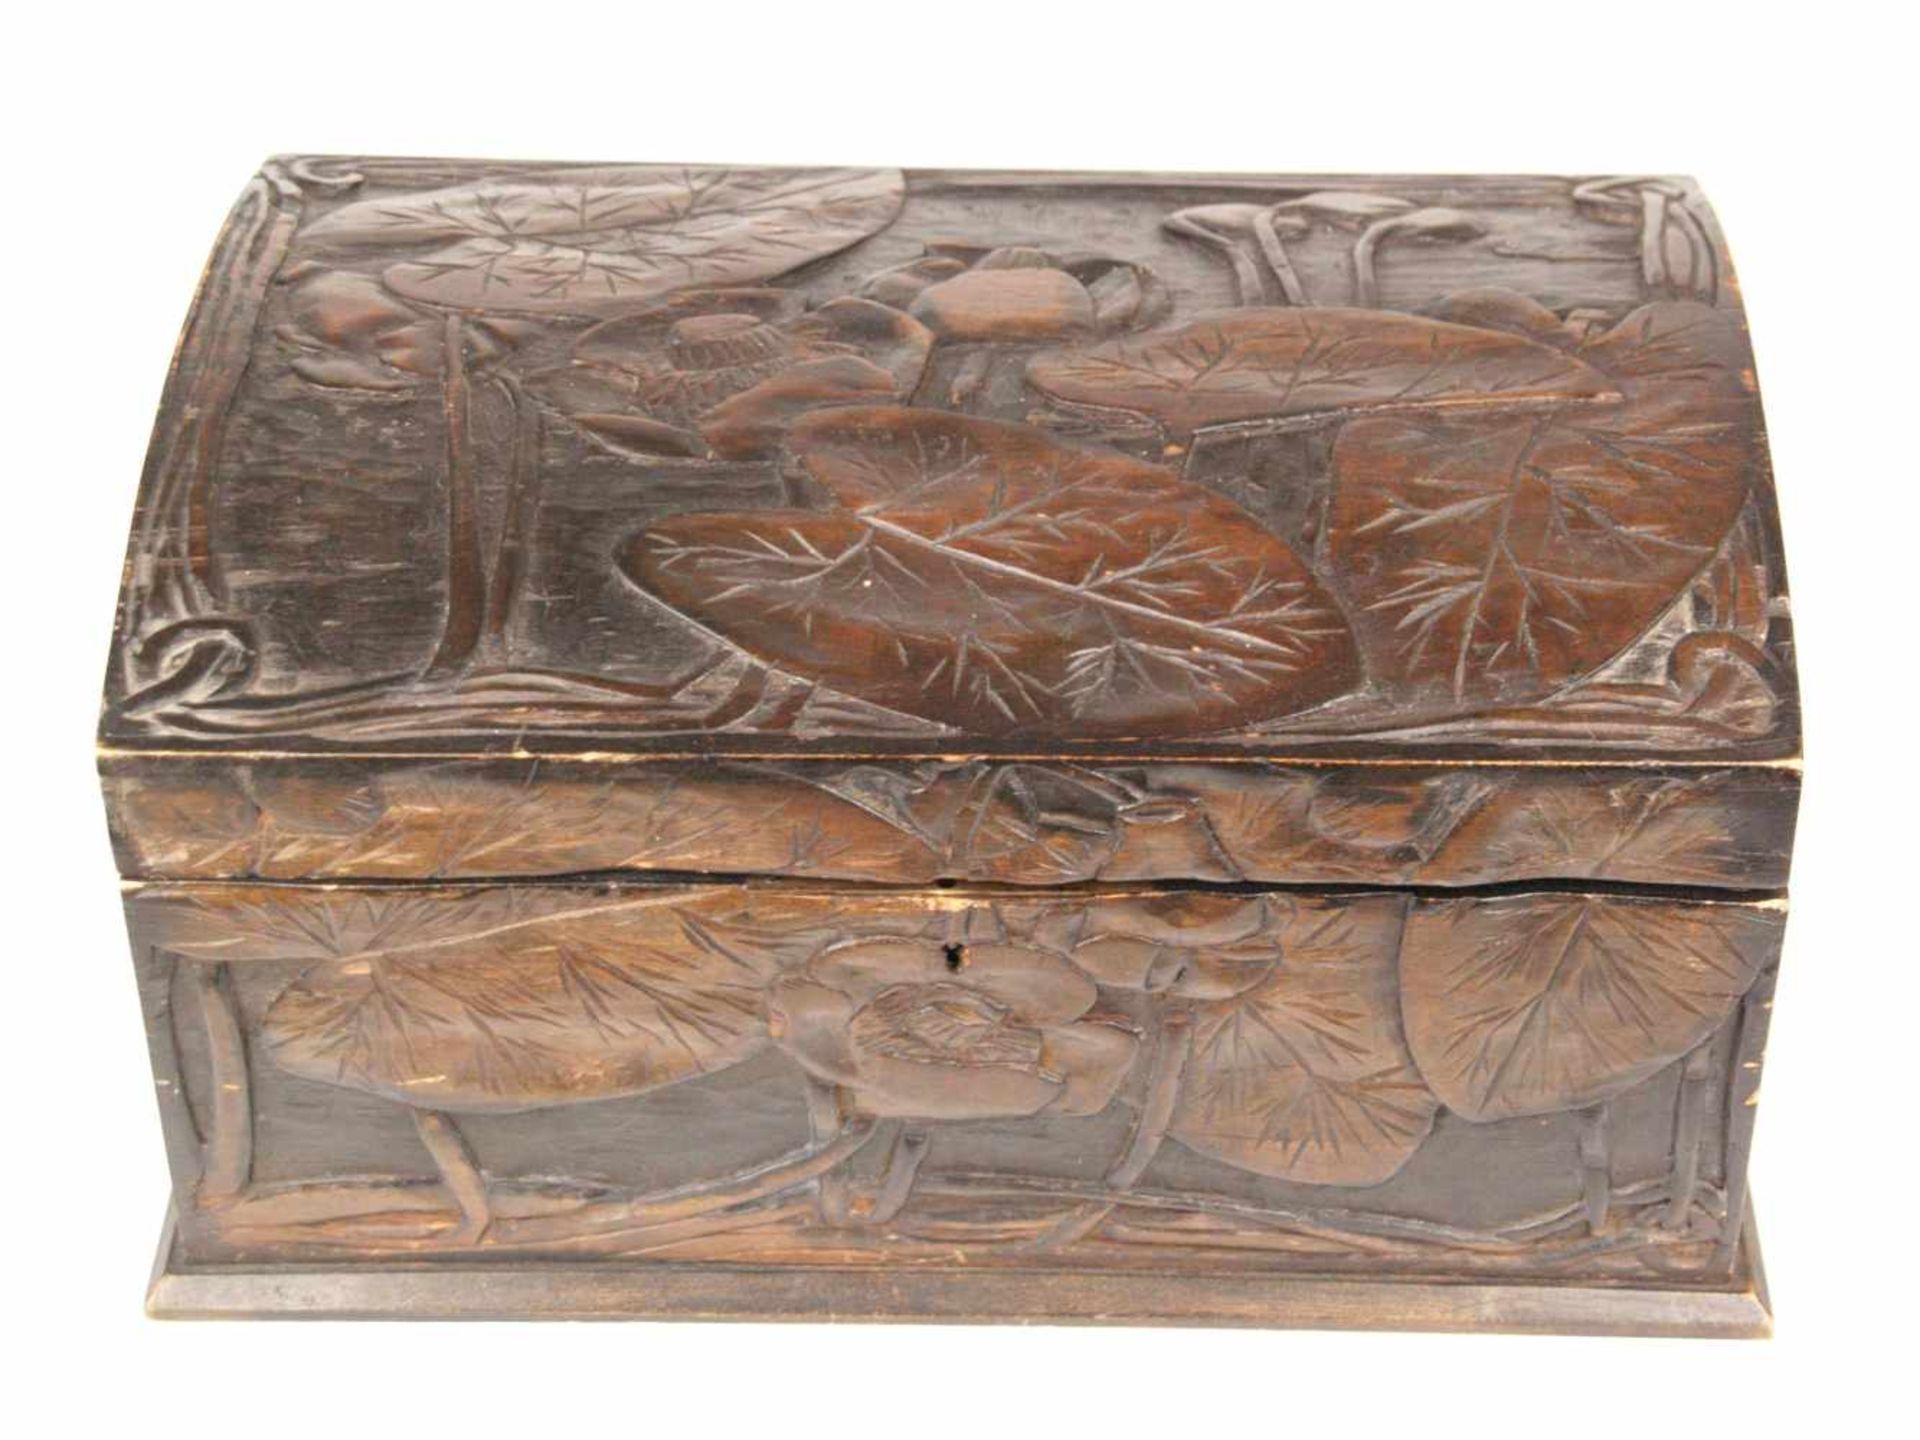 Holzkasten - rechteckiger Korpus, außen braun bemalt, geschnitzter Lotosblumen Dekor,